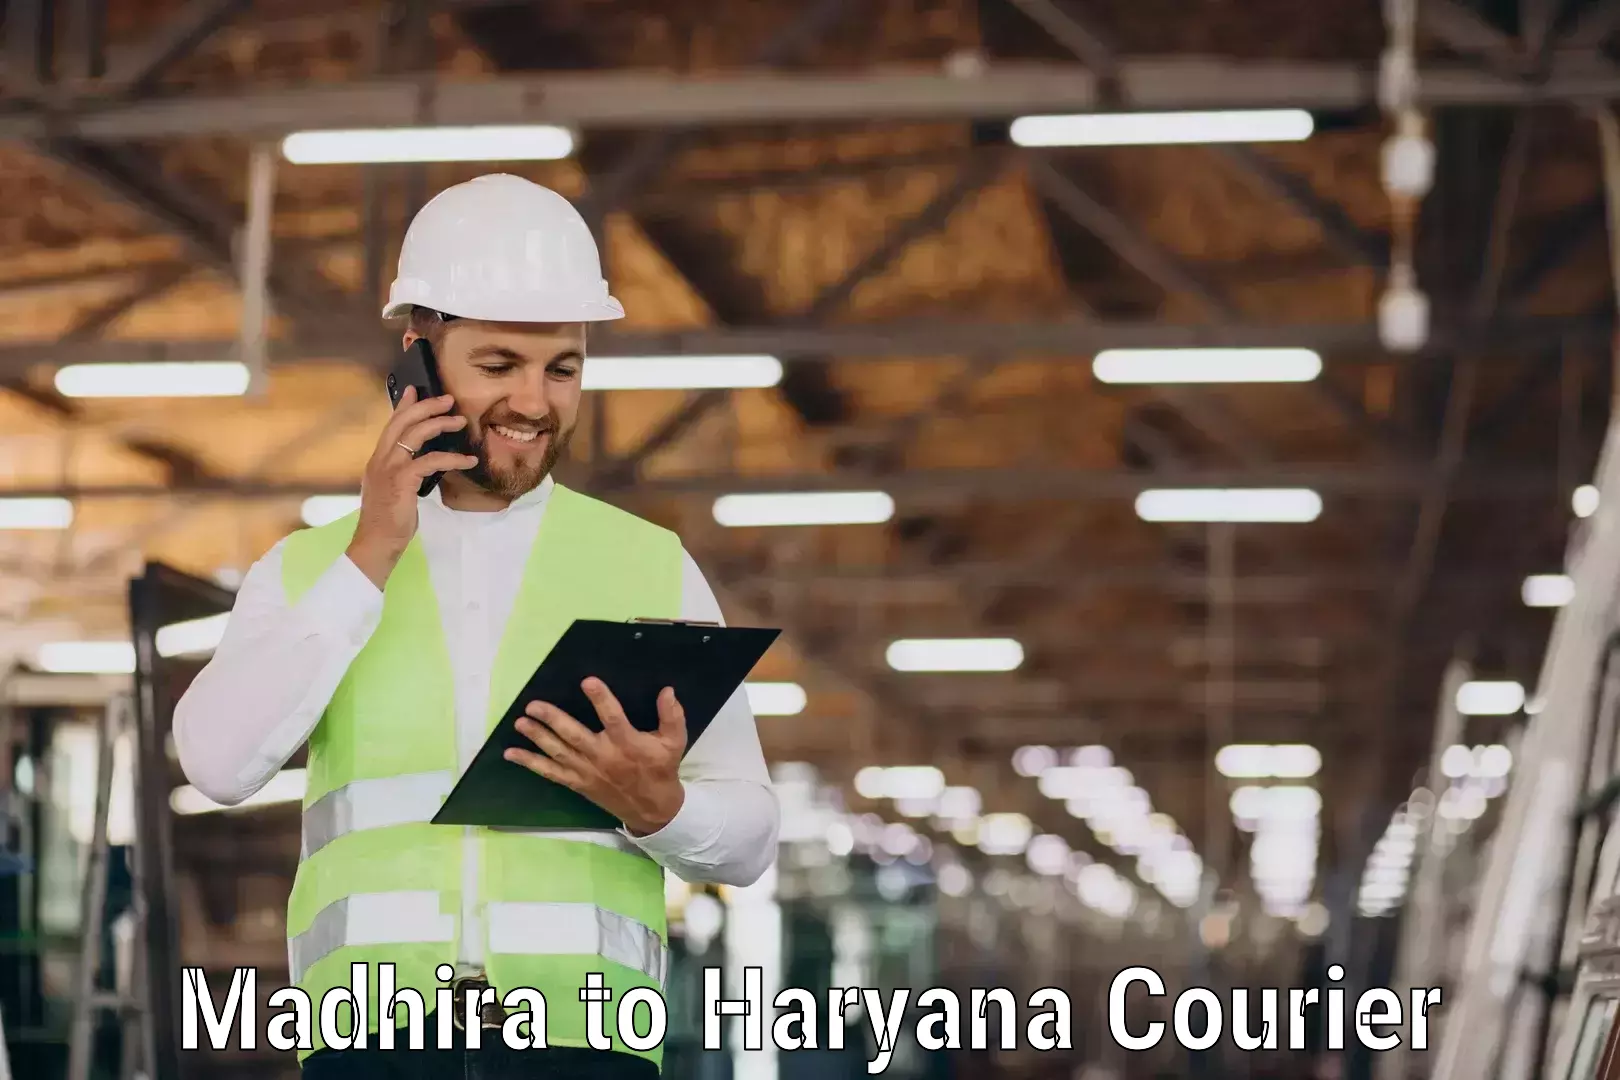 Courier service partnerships Madhira to Gurugram